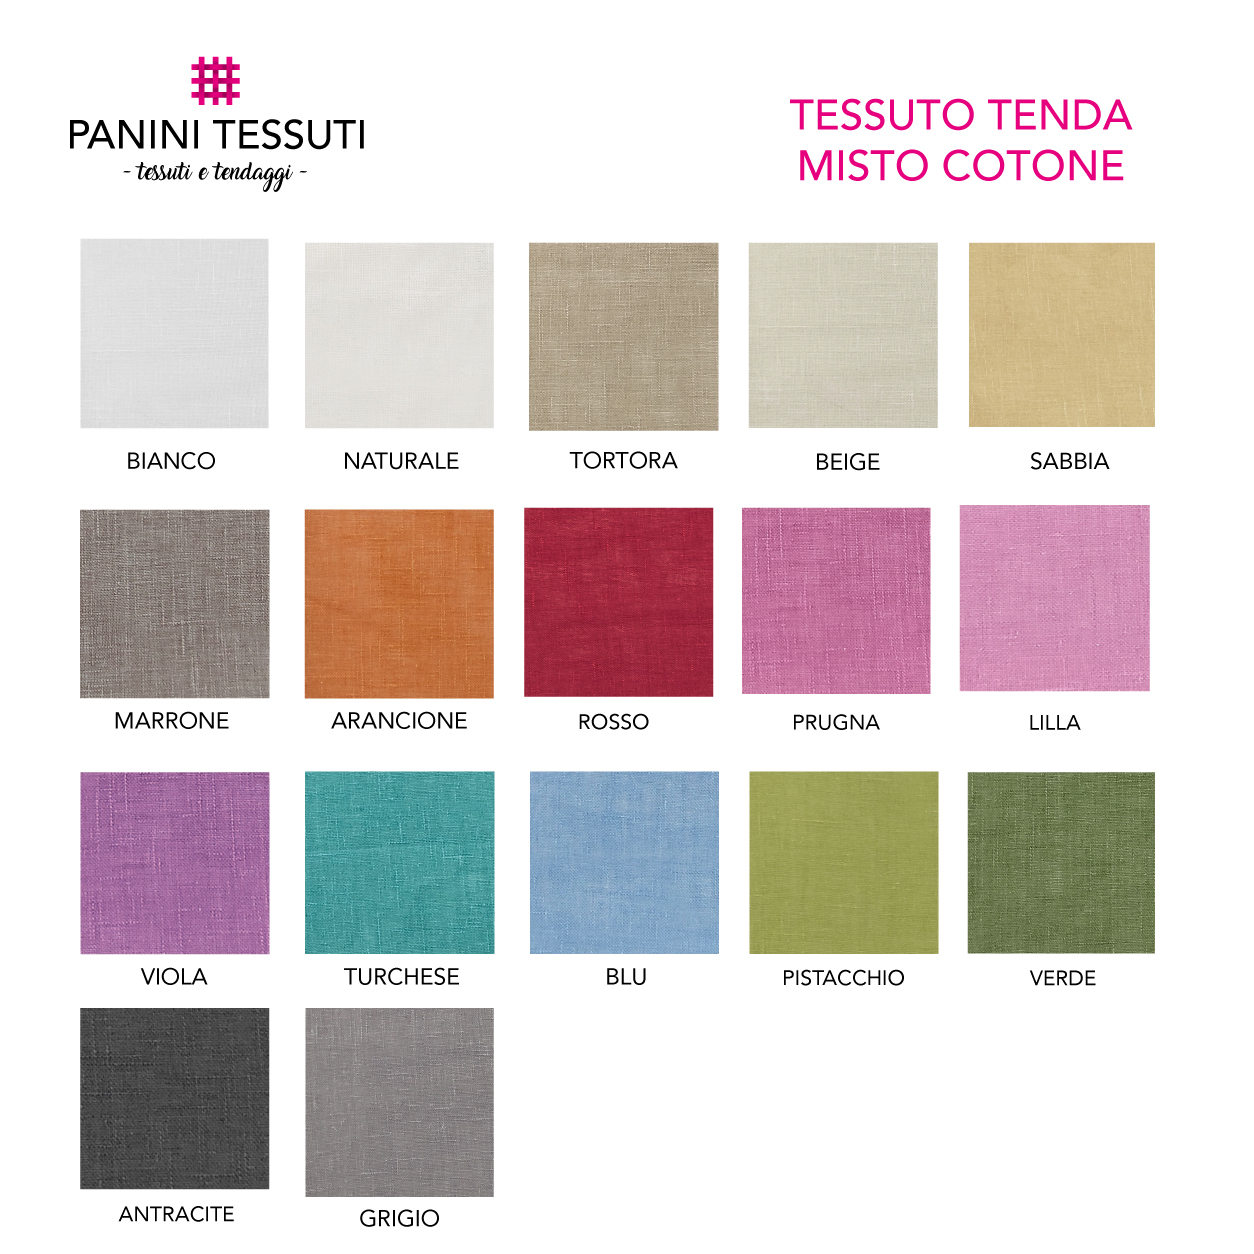 Tabella-Colore-tenda-misto-cotone